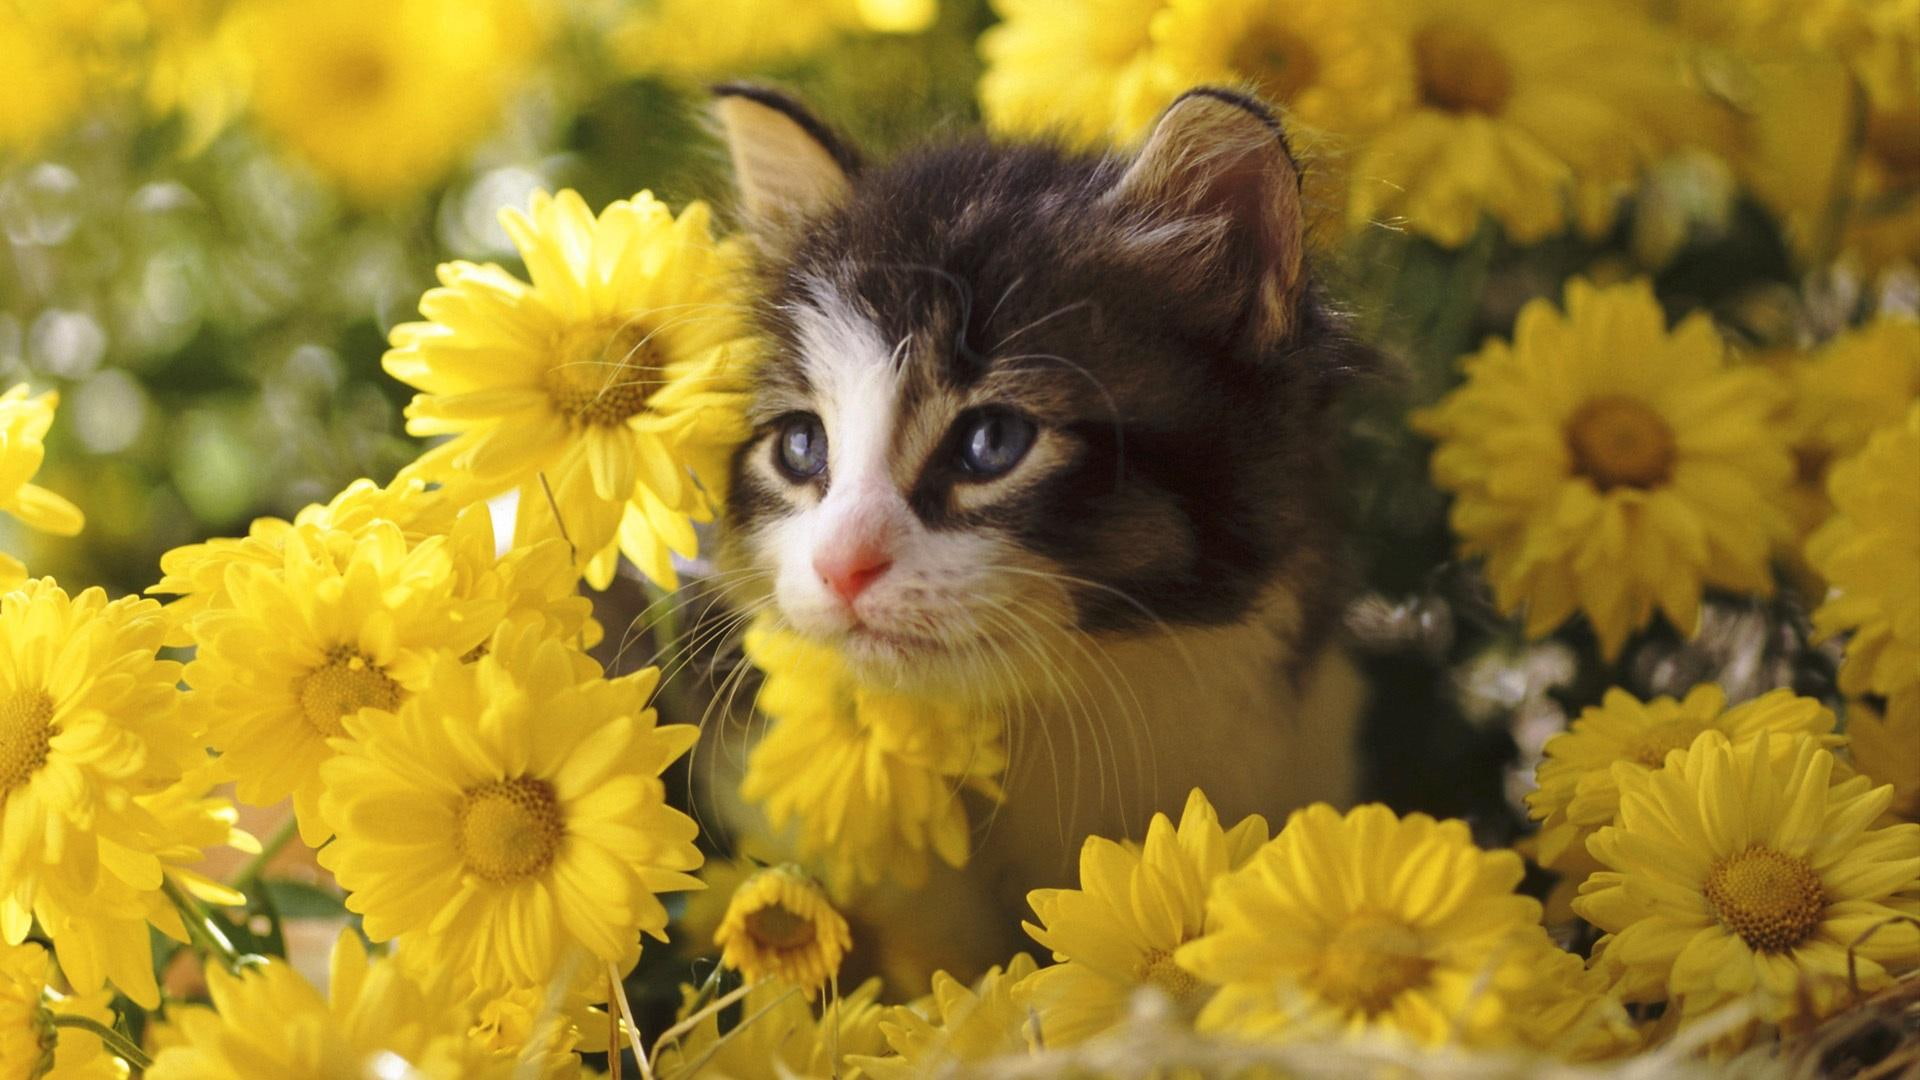 A Kitten Setting In The Flowers, black and white short fur kitten